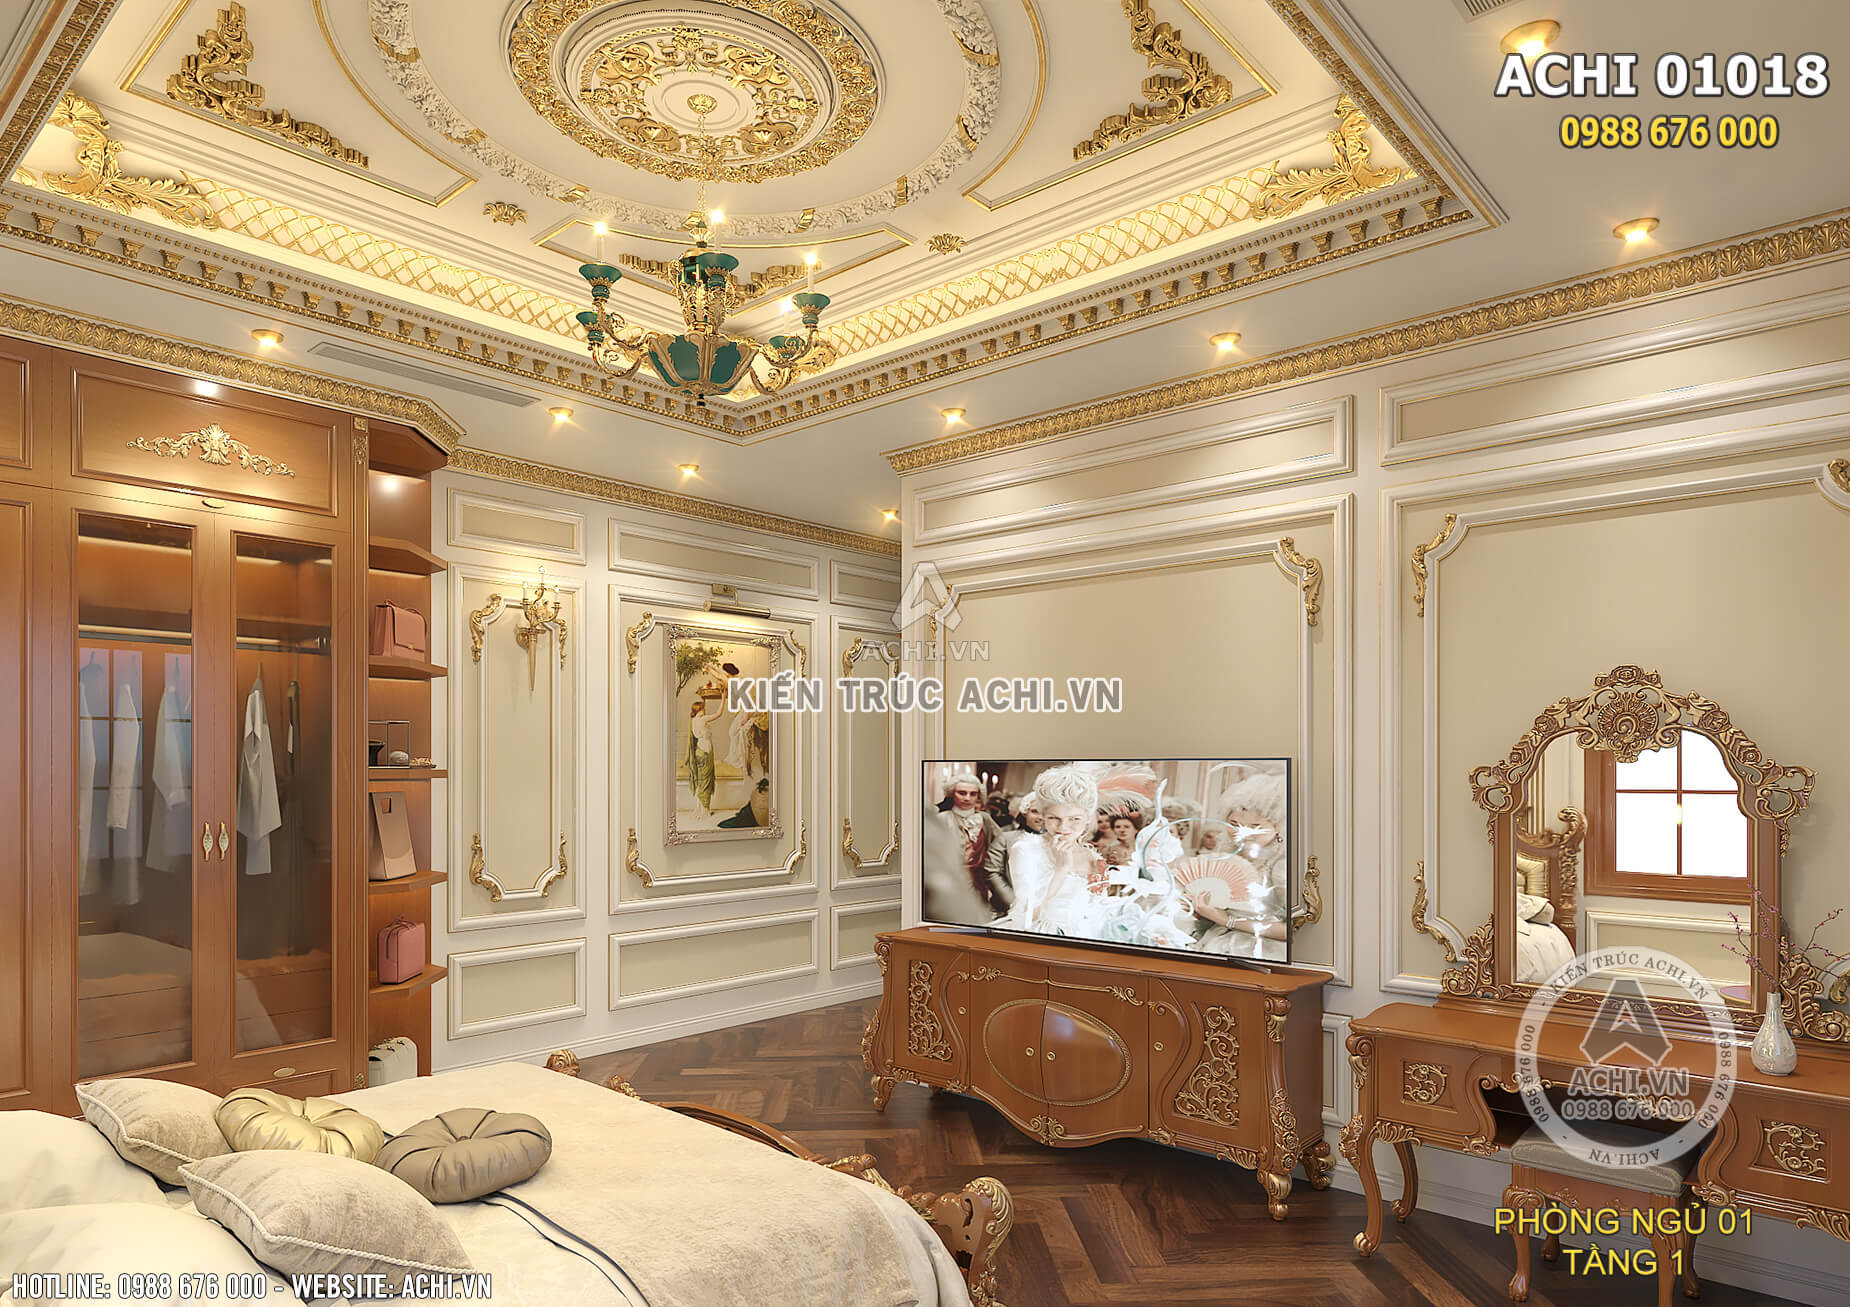 Phòng ngủ tầng 1 được thiết kế cầu kỳ, tinh xảo mang đến một không gian sống đẳng cấp